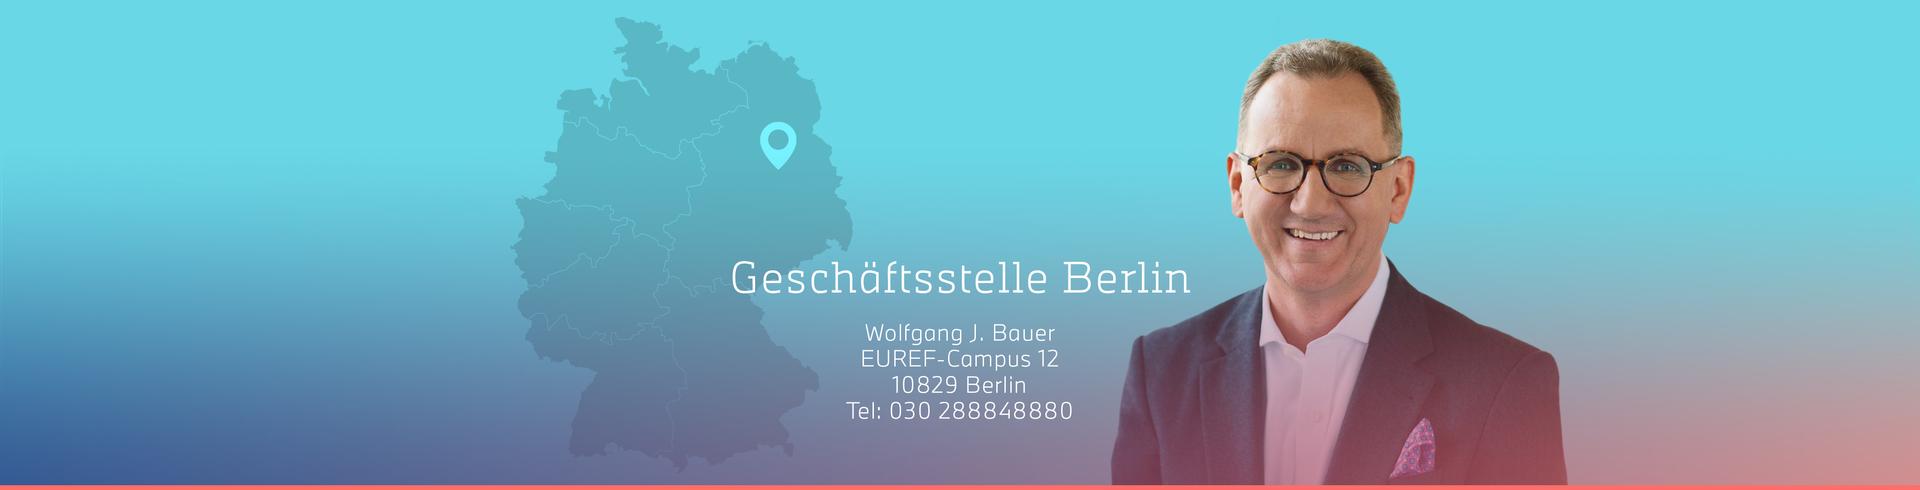 Wolfgang Bauer_GST_Berlin